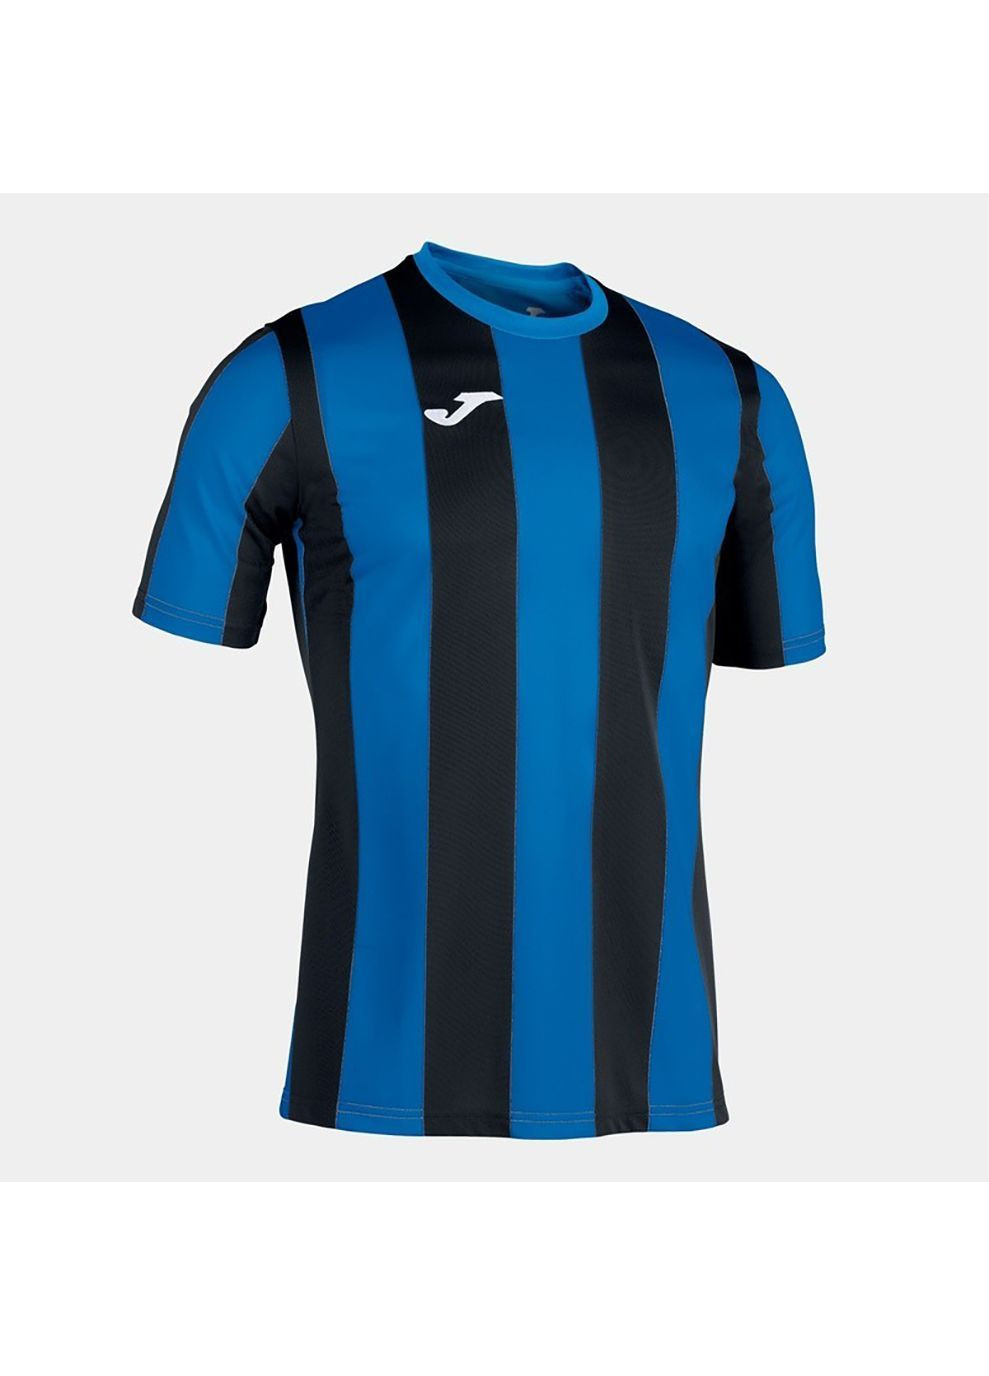 Синя футболка inter t-shirt royal-black s/s чорний,синій Joma